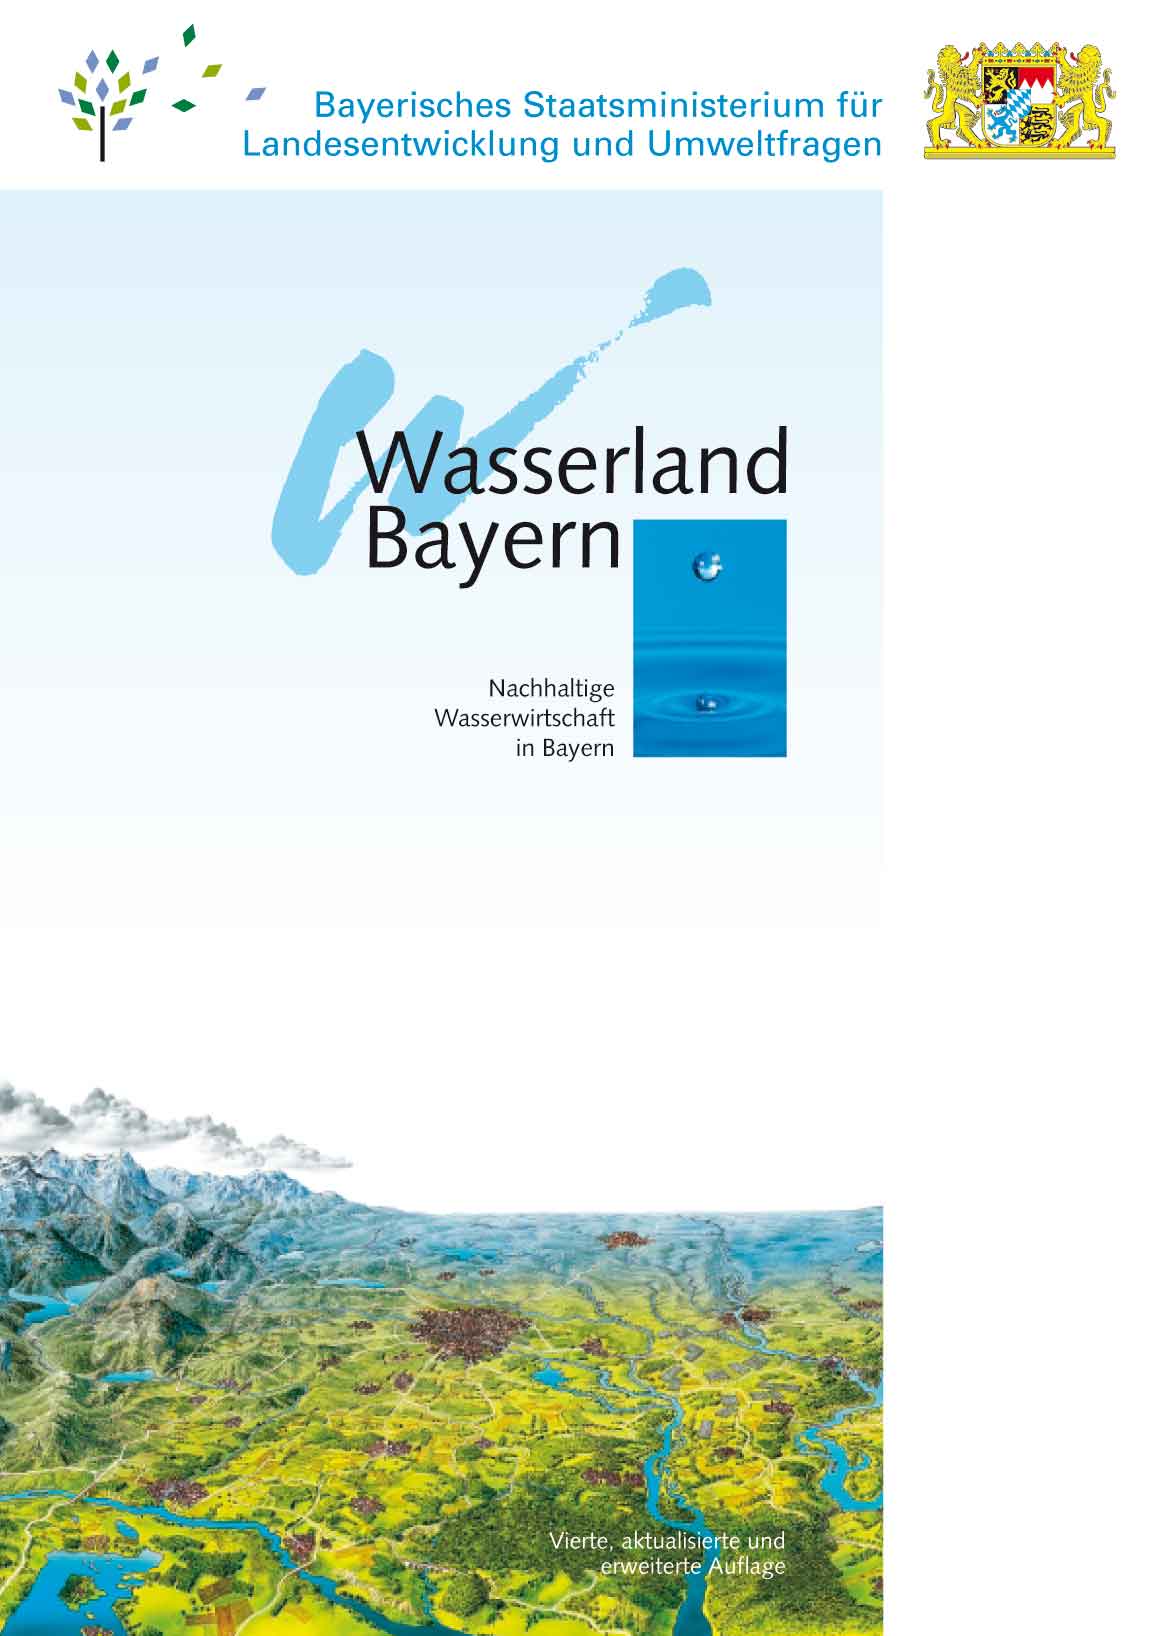 Titel der von Rudolf L. Schreiber konzipierten Basis-Broschüre der Bayerischen Wasserwirtschaft